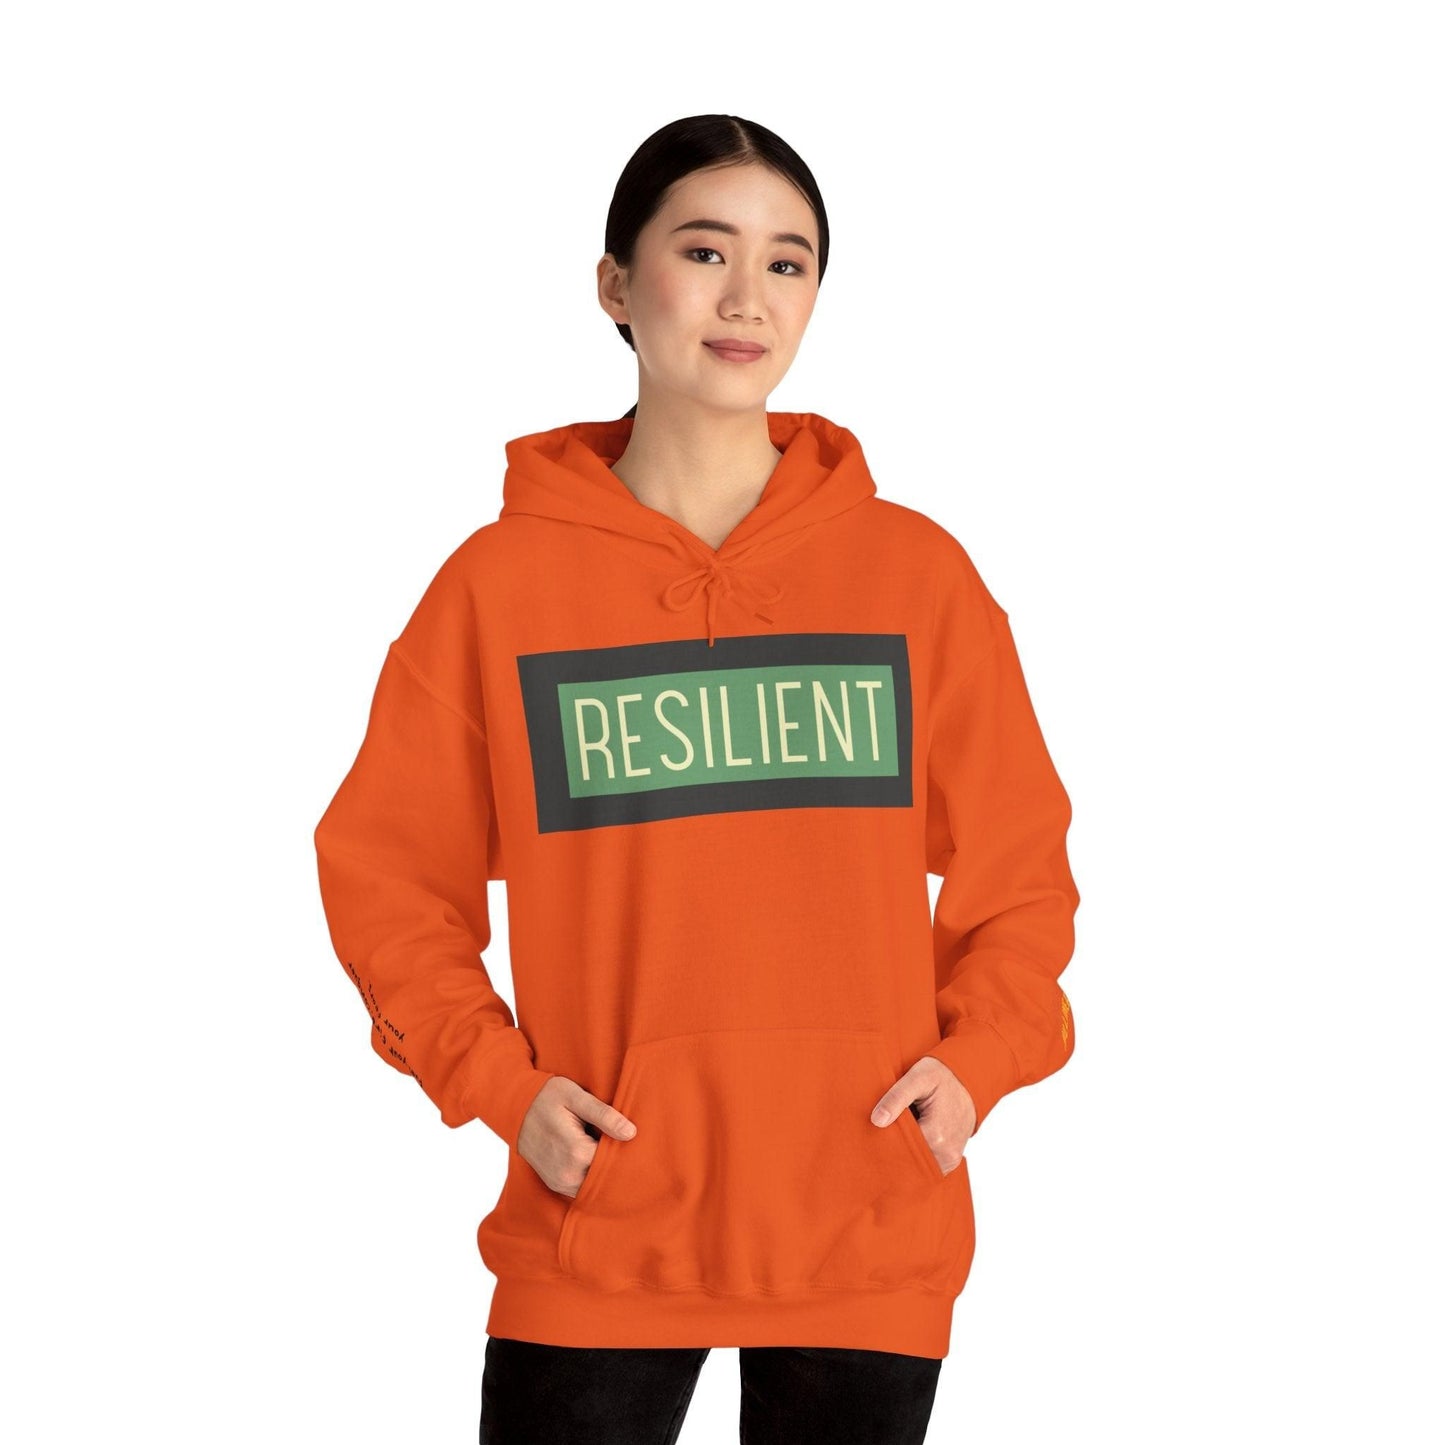 Resilient Unisex Heavy Blend Hooded Sweatshirt Hoodie Orange S 